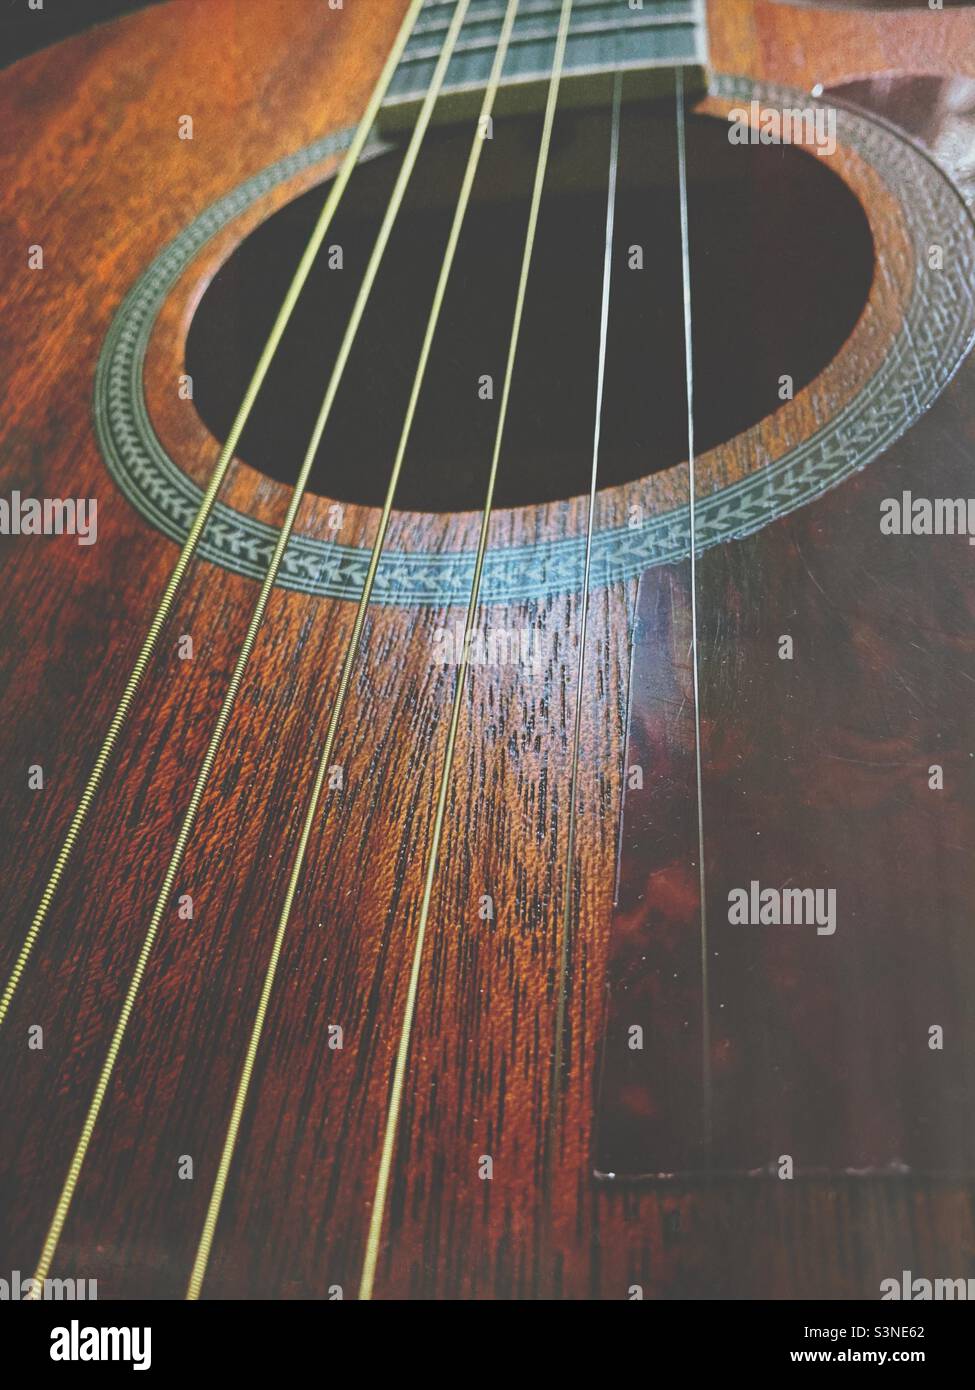 Eine Nahaufnahme einer Mahagoni-Akustik-Orangewood-Gitarren-Soundboard,  Streicher und Soundloch Stockfotografie - Alamy